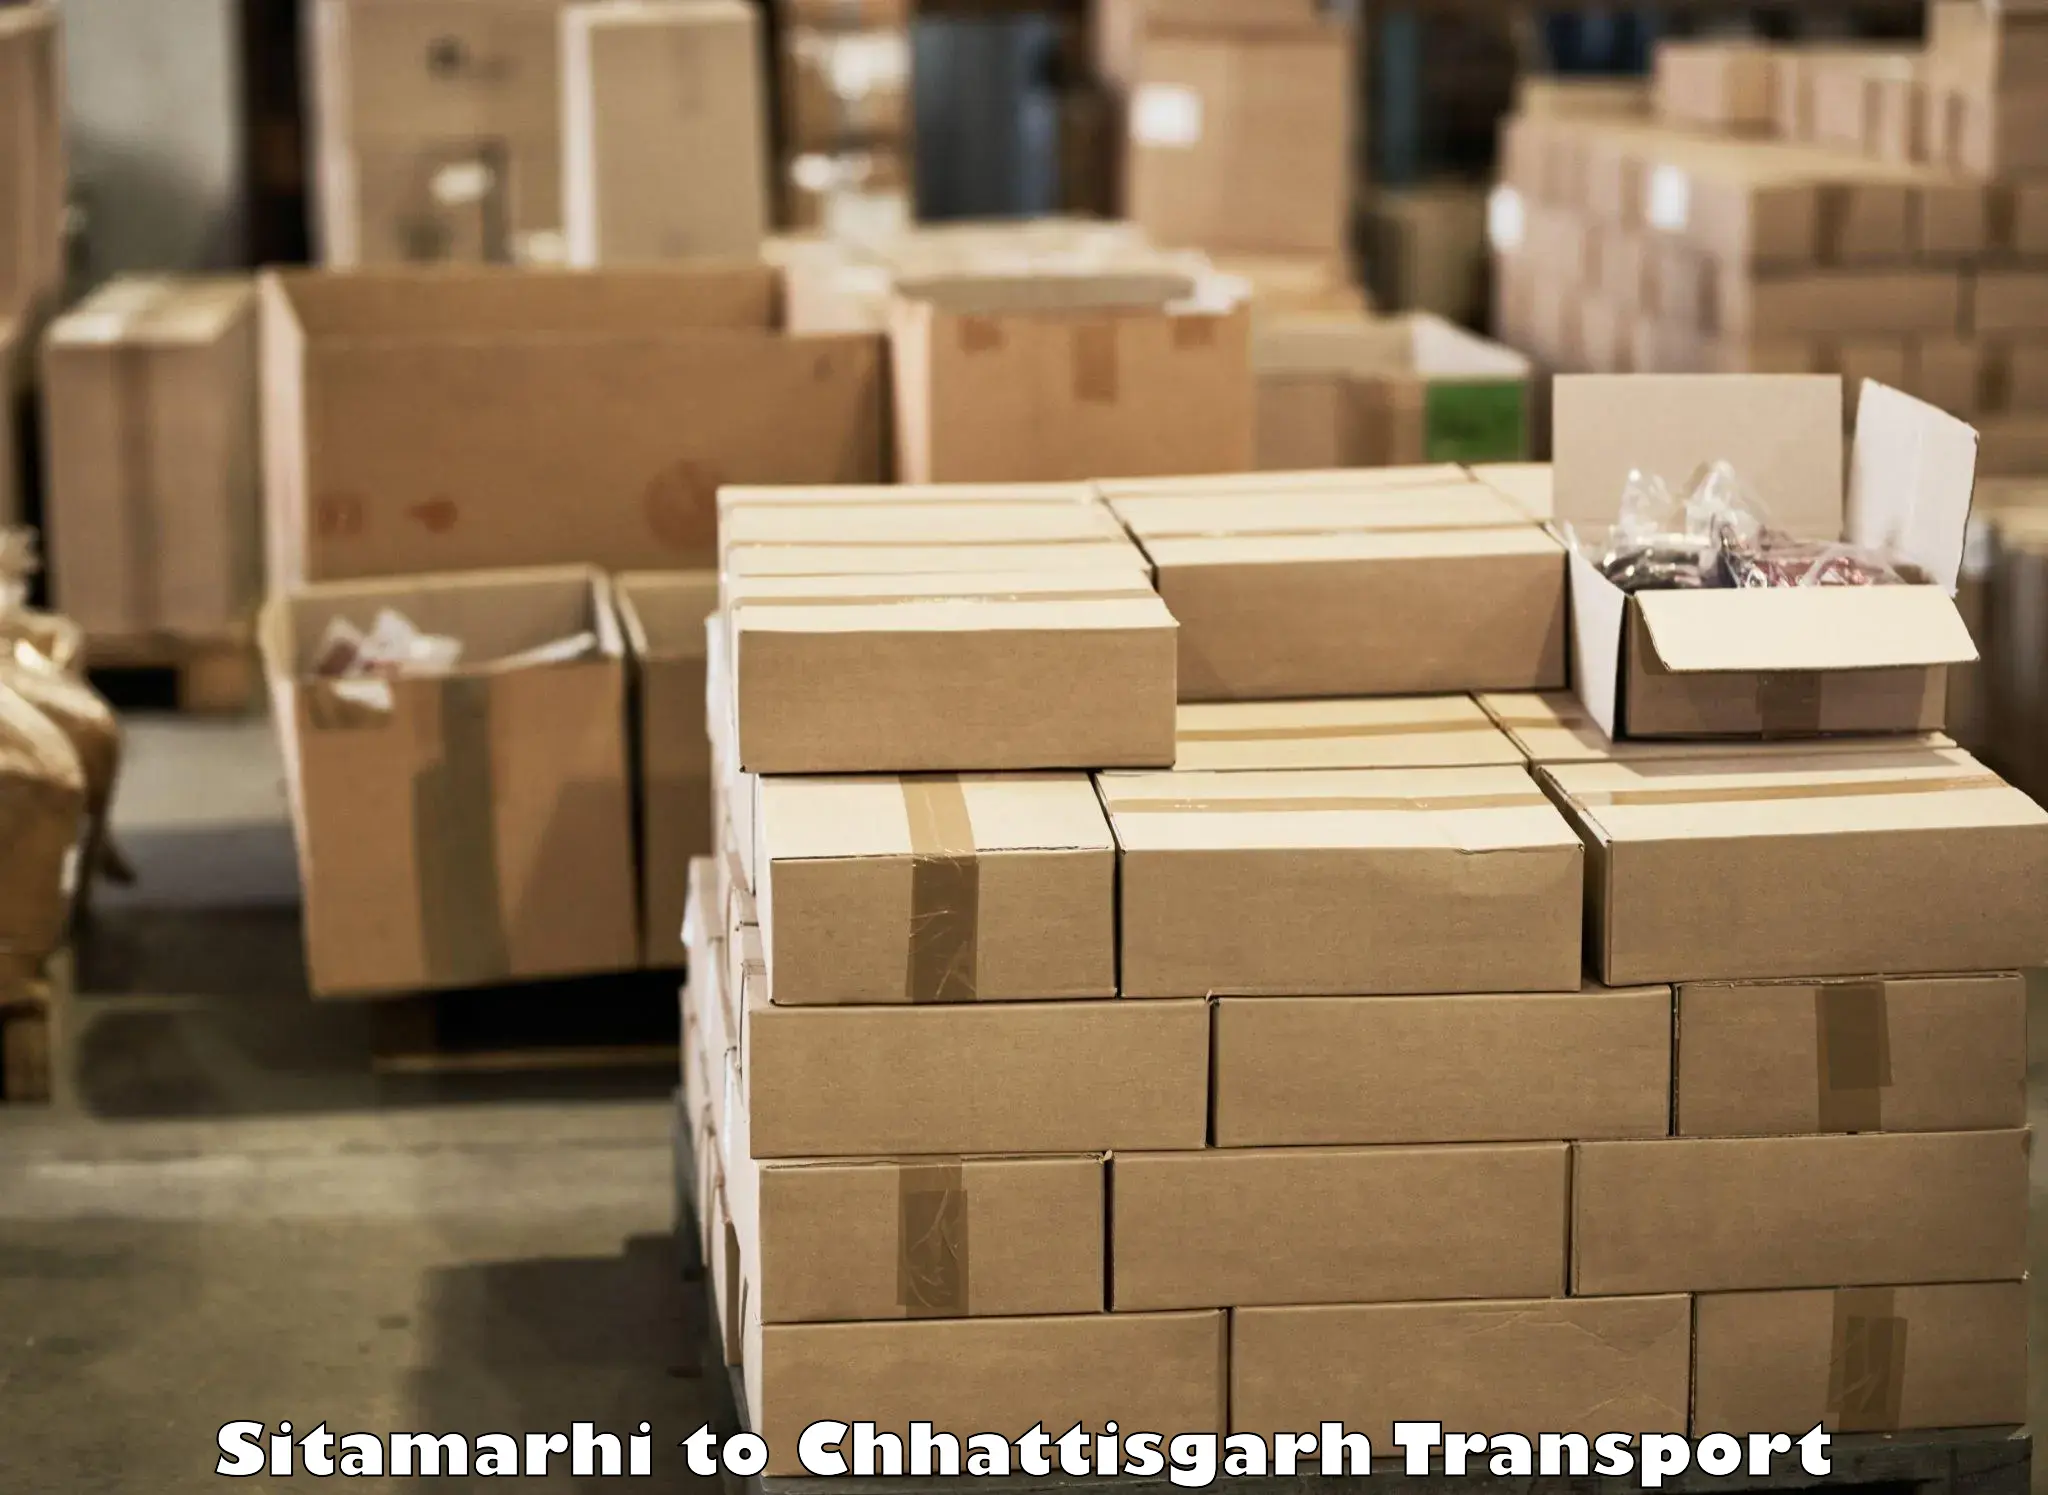 Delivery service Sitamarhi to Chhattisgarh